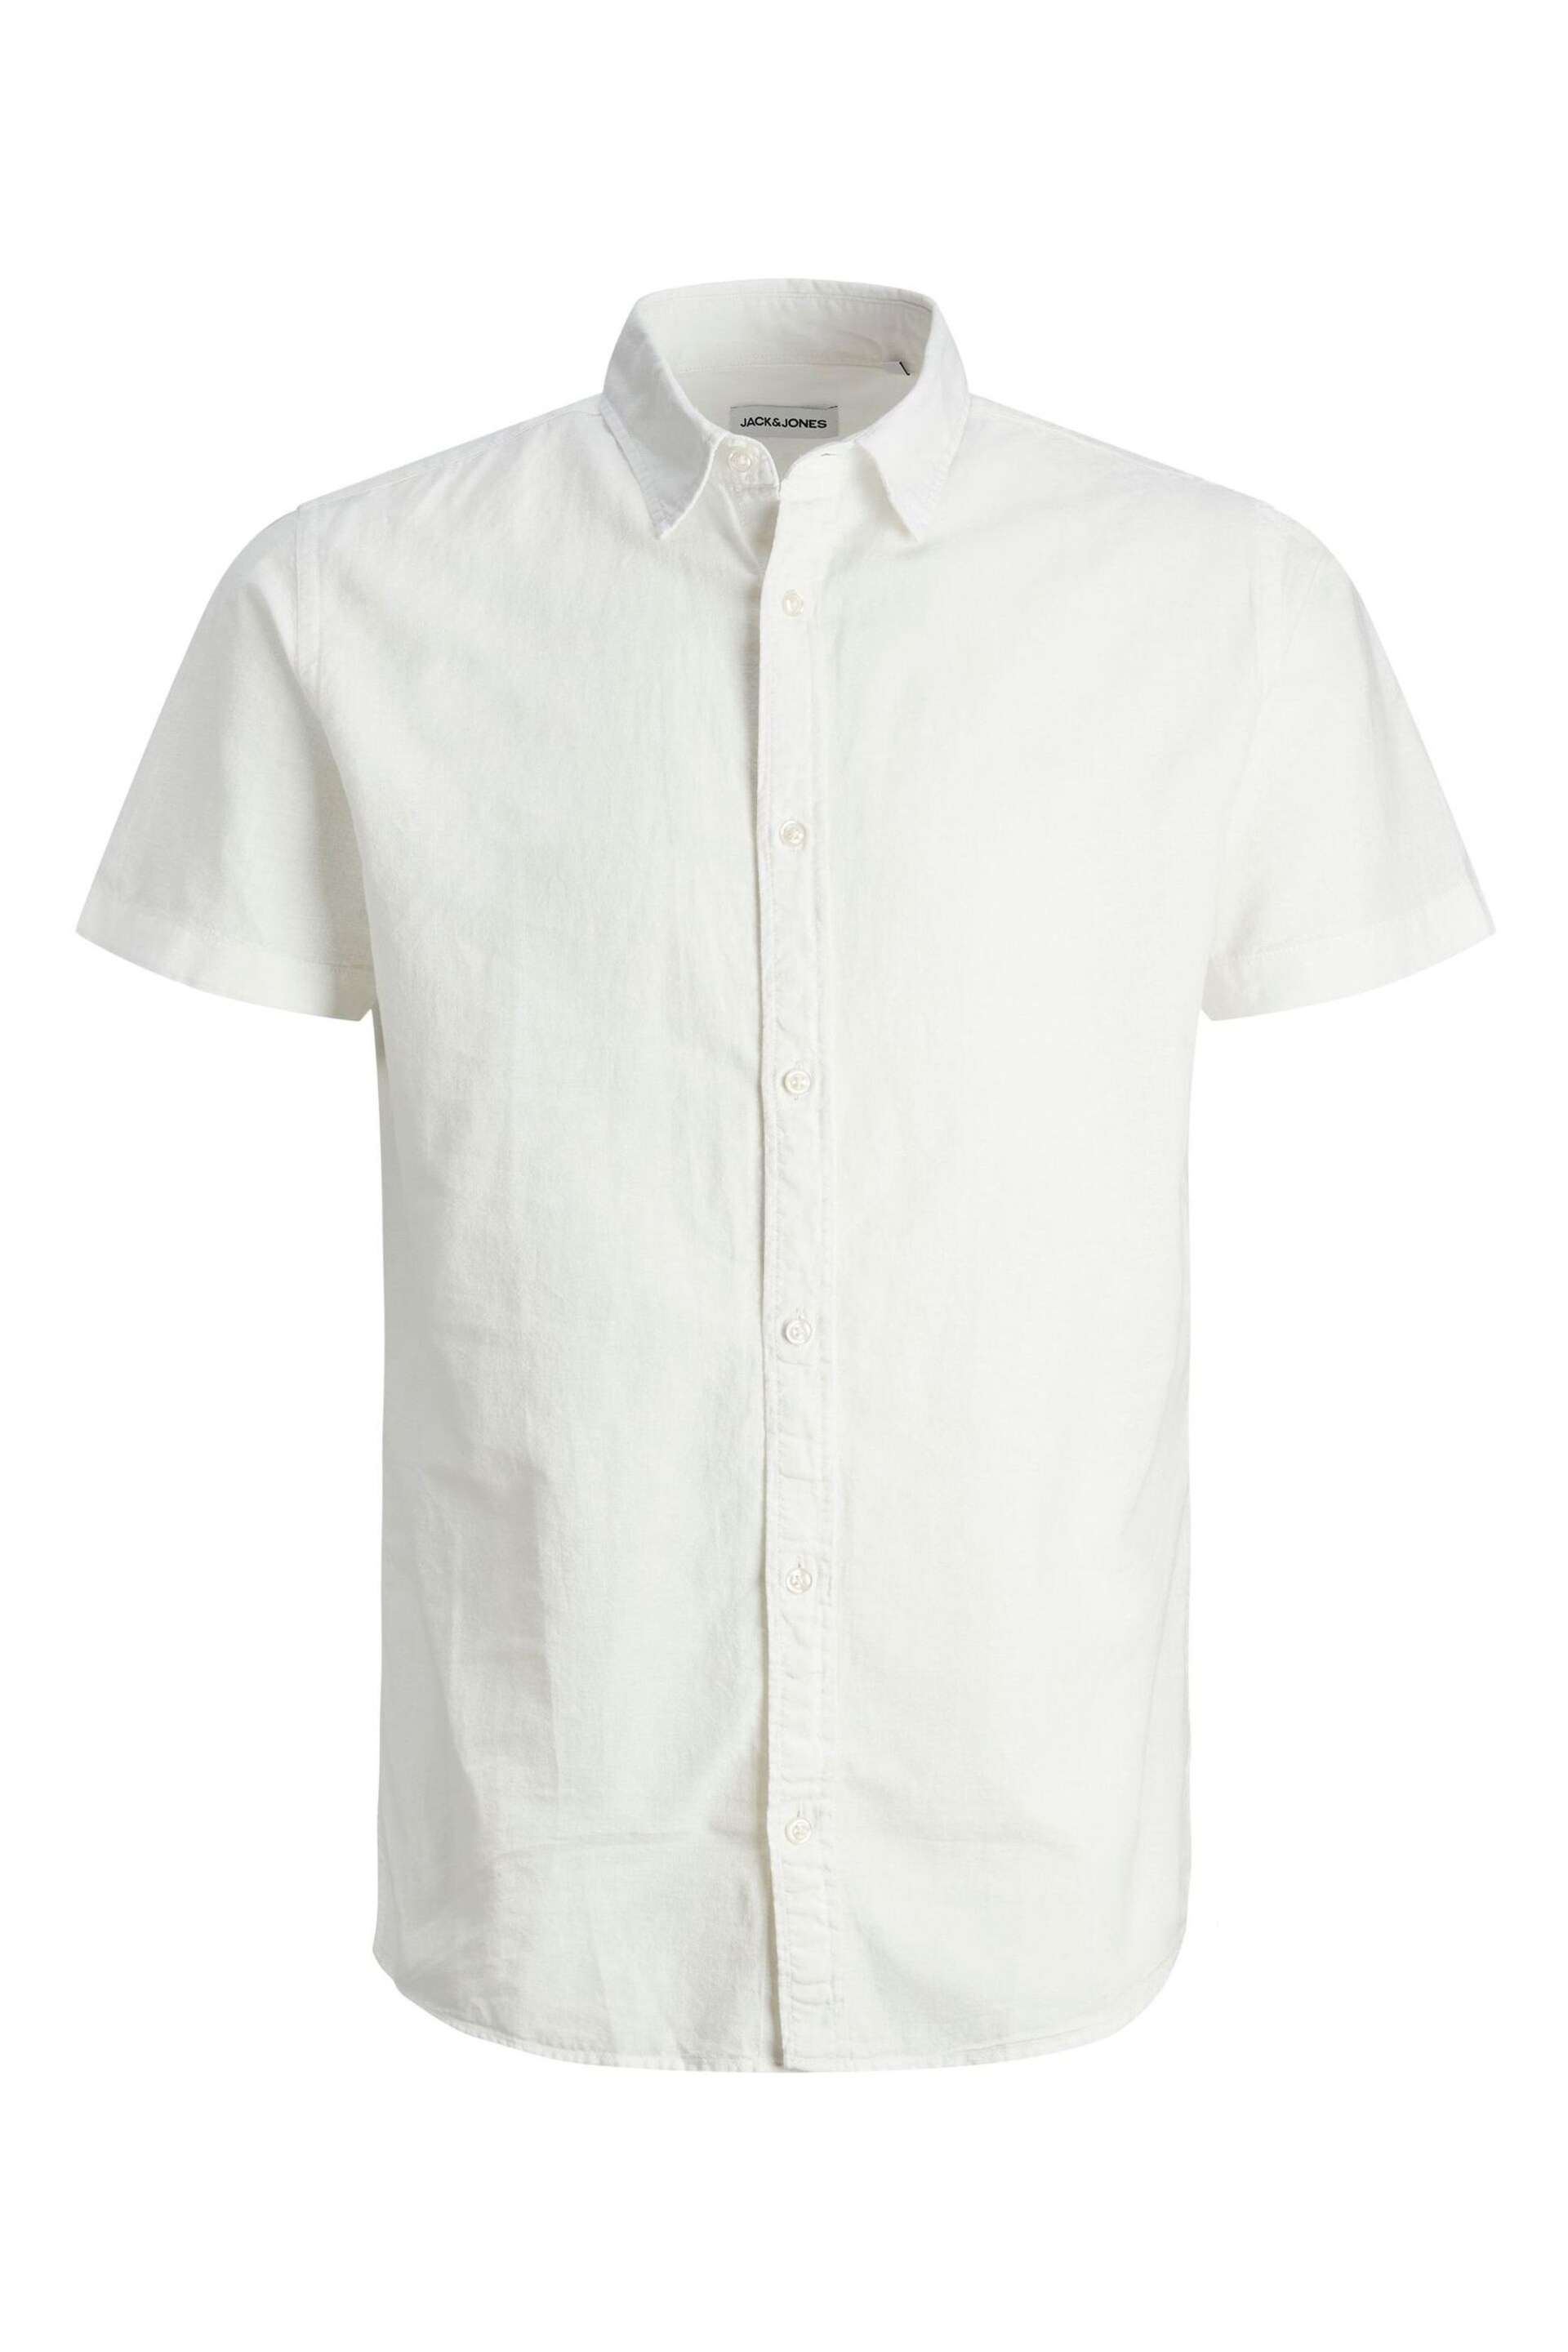 JACK & JONES White Linen Blend Short Sleeve Shirt - Image 10 of 10